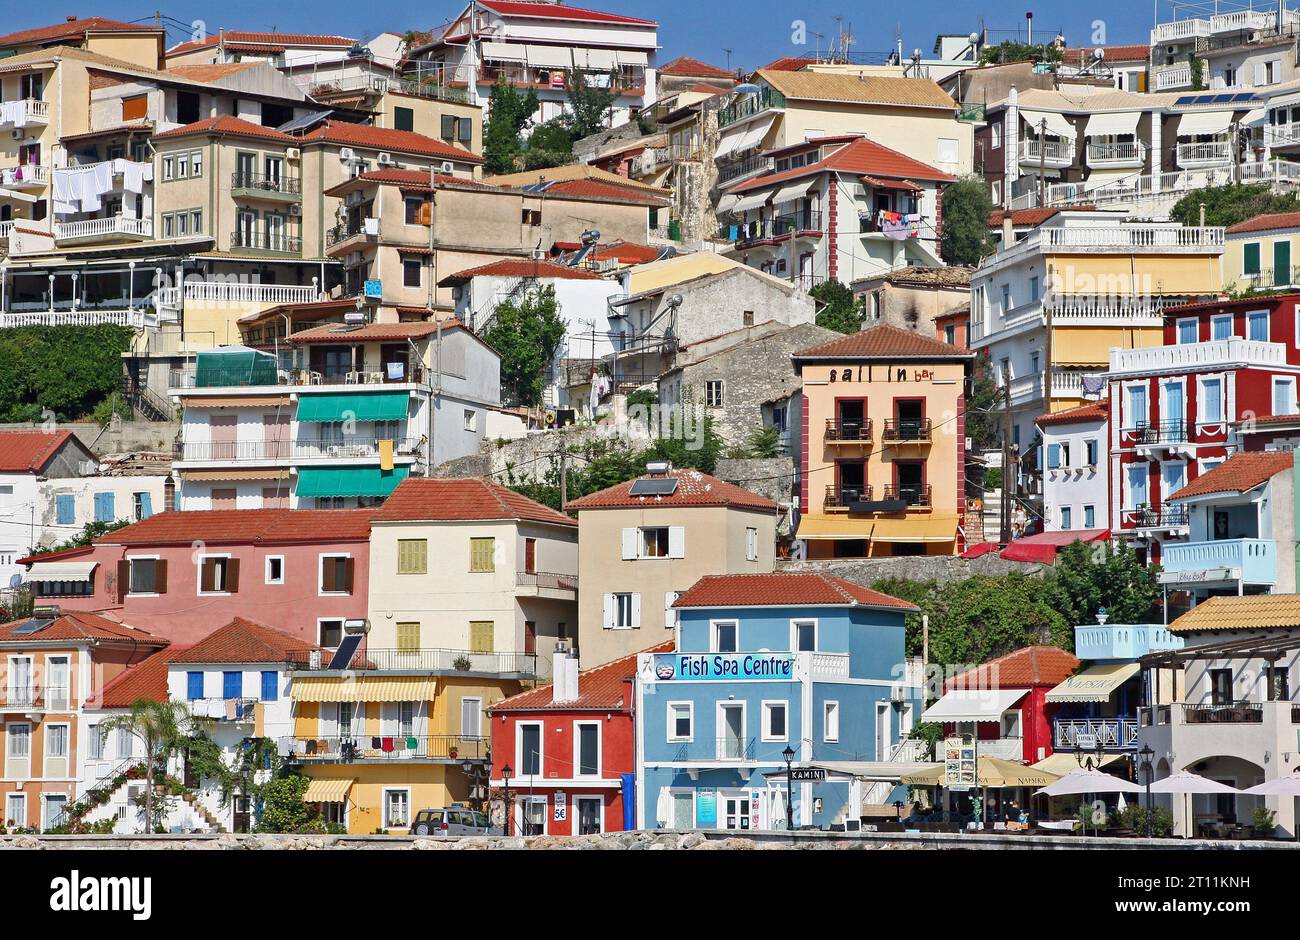 Farbenfrohe Häuser und Restaurants an den Klippen blicken auf den malerischen Hafen von Parga, eine Küstenstadt in der Epirus-Region im nordwestlichen griechischen Festland Stockfoto